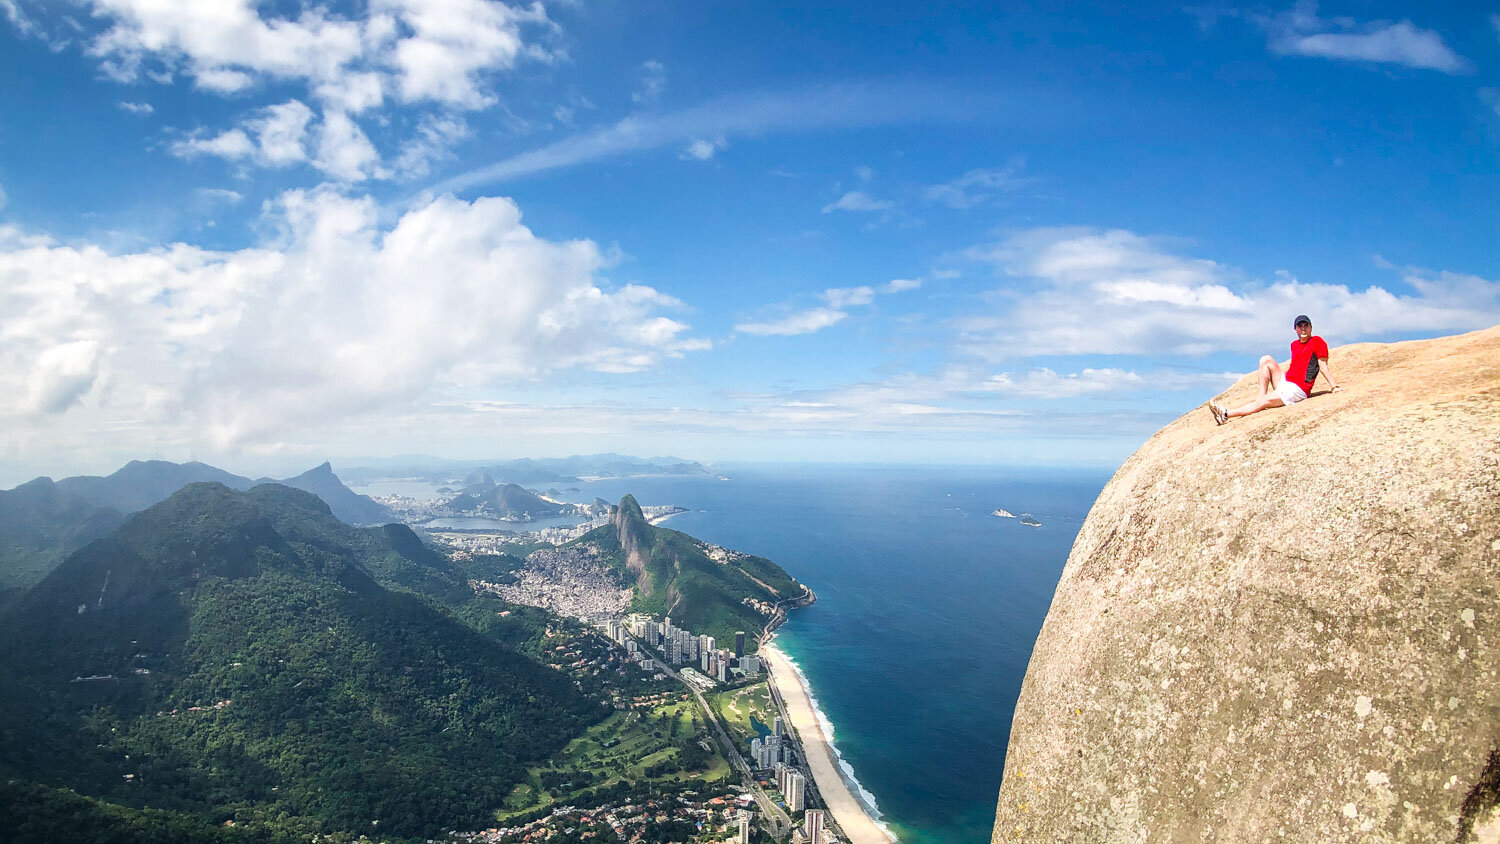 A melhor lista de trilhas em Rio de Janeiro : Trilha da Pedra da Gávea - Carrasqueira - Rio de Janeiro: Trecho da Carrasqueira – Pedra da Gávea